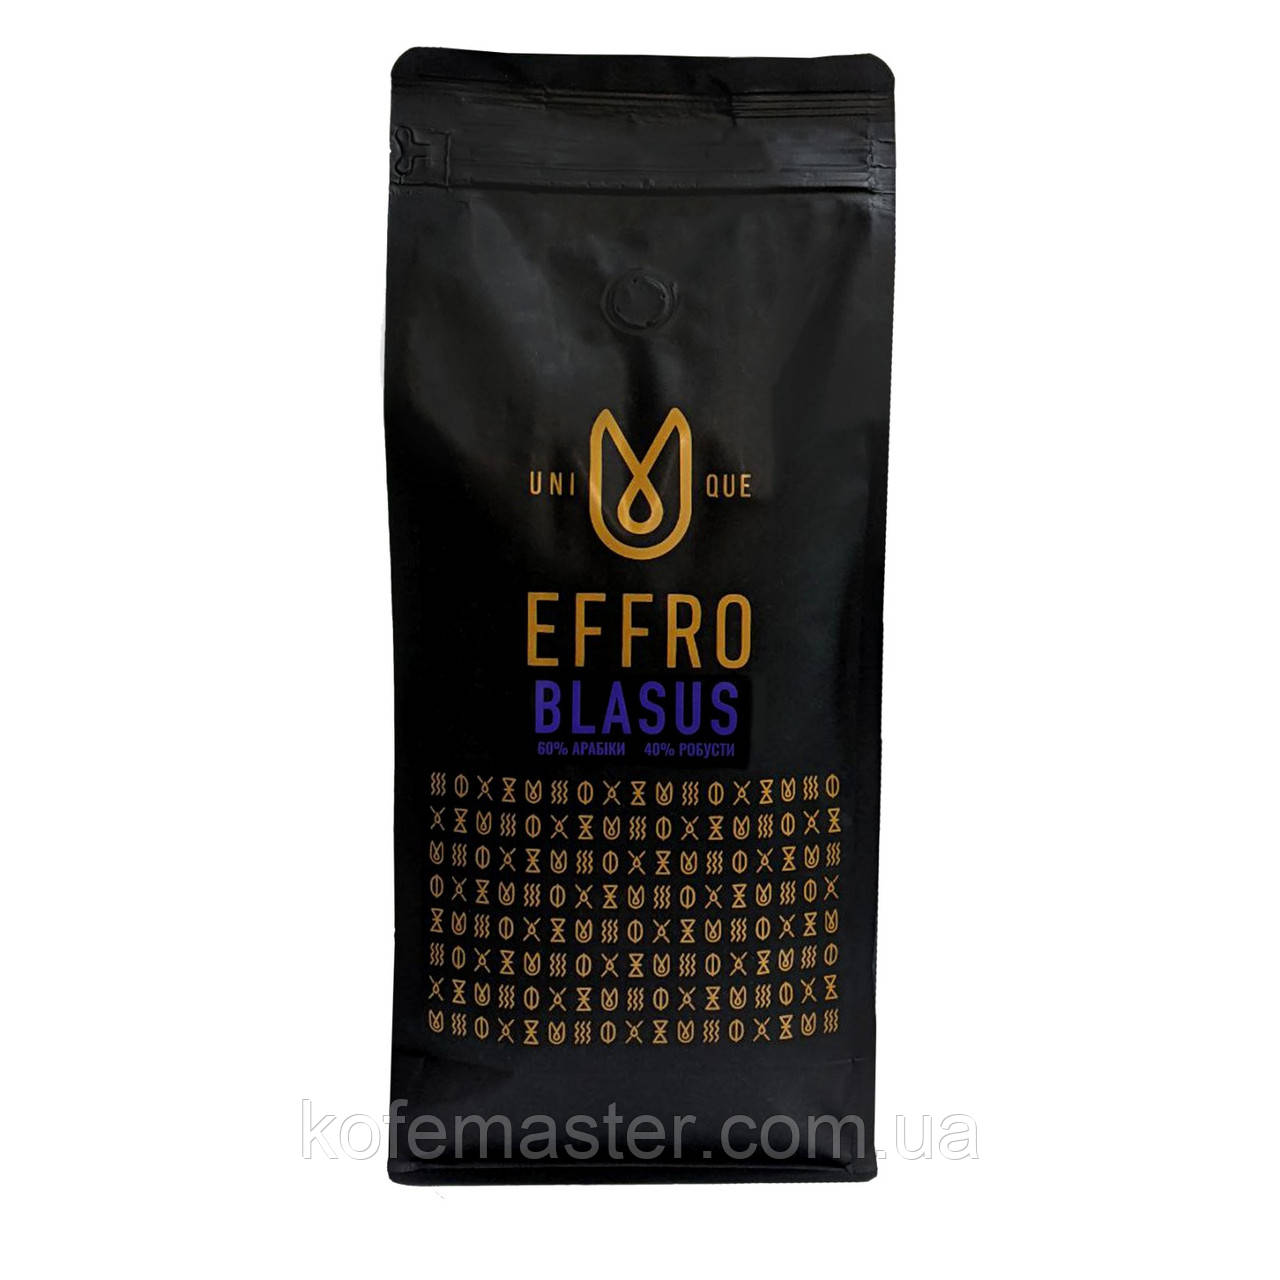 Кава в зернах EFFRO BLASUS 1 кг. свіжого обсмажування, 60% арабіка